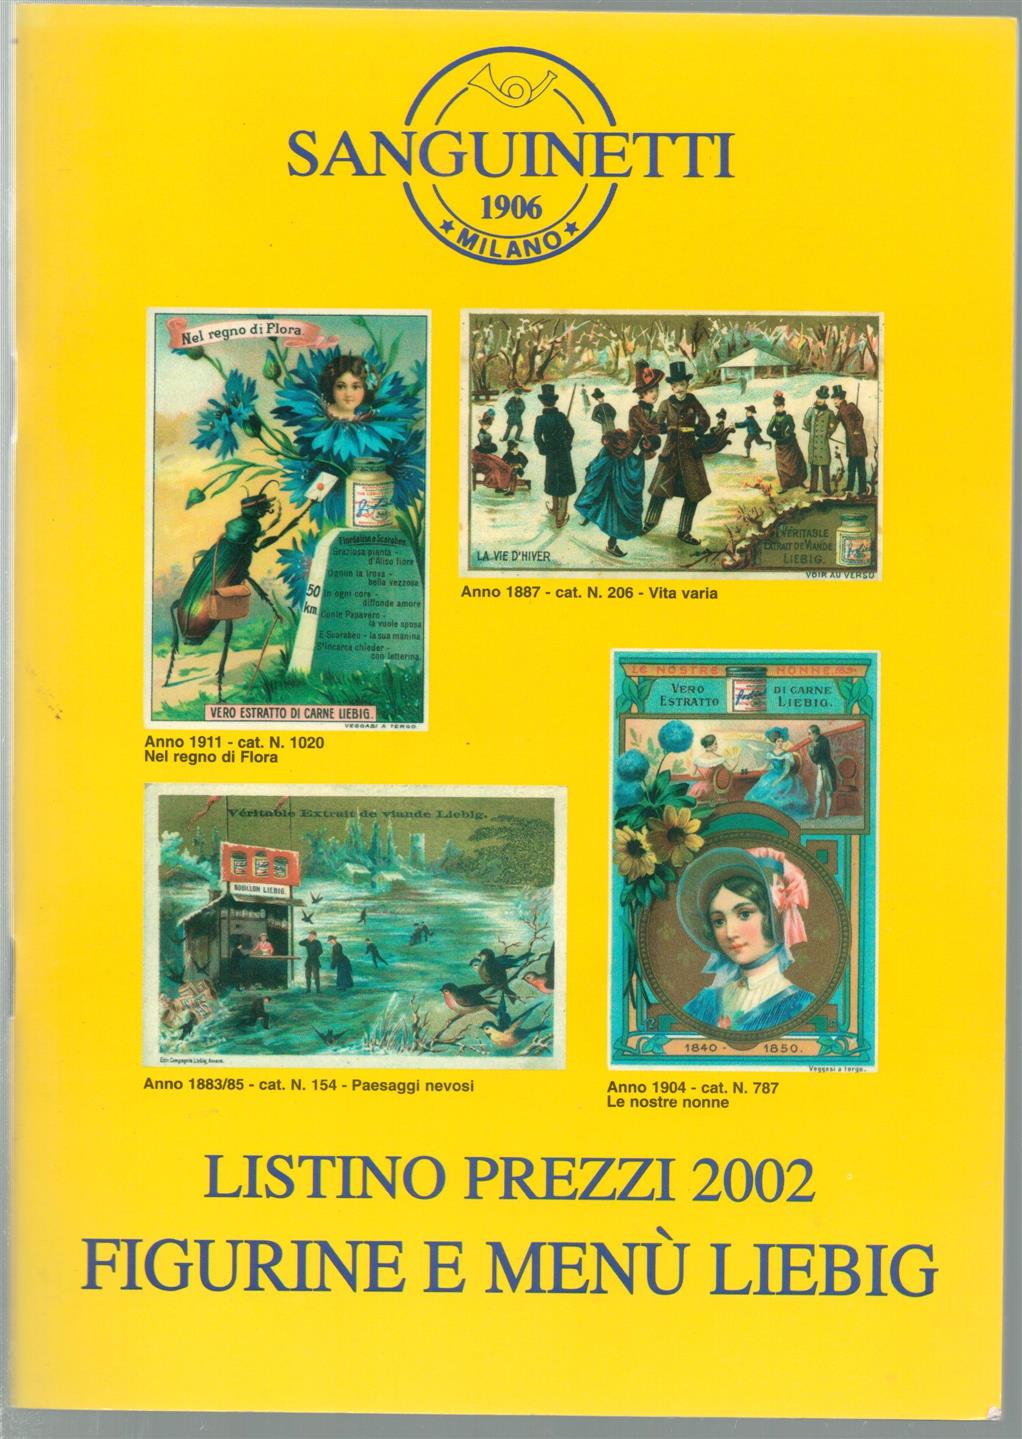 anguinetti (Firm) - Listino prezzi delle figurine e menu Liebig, 2002